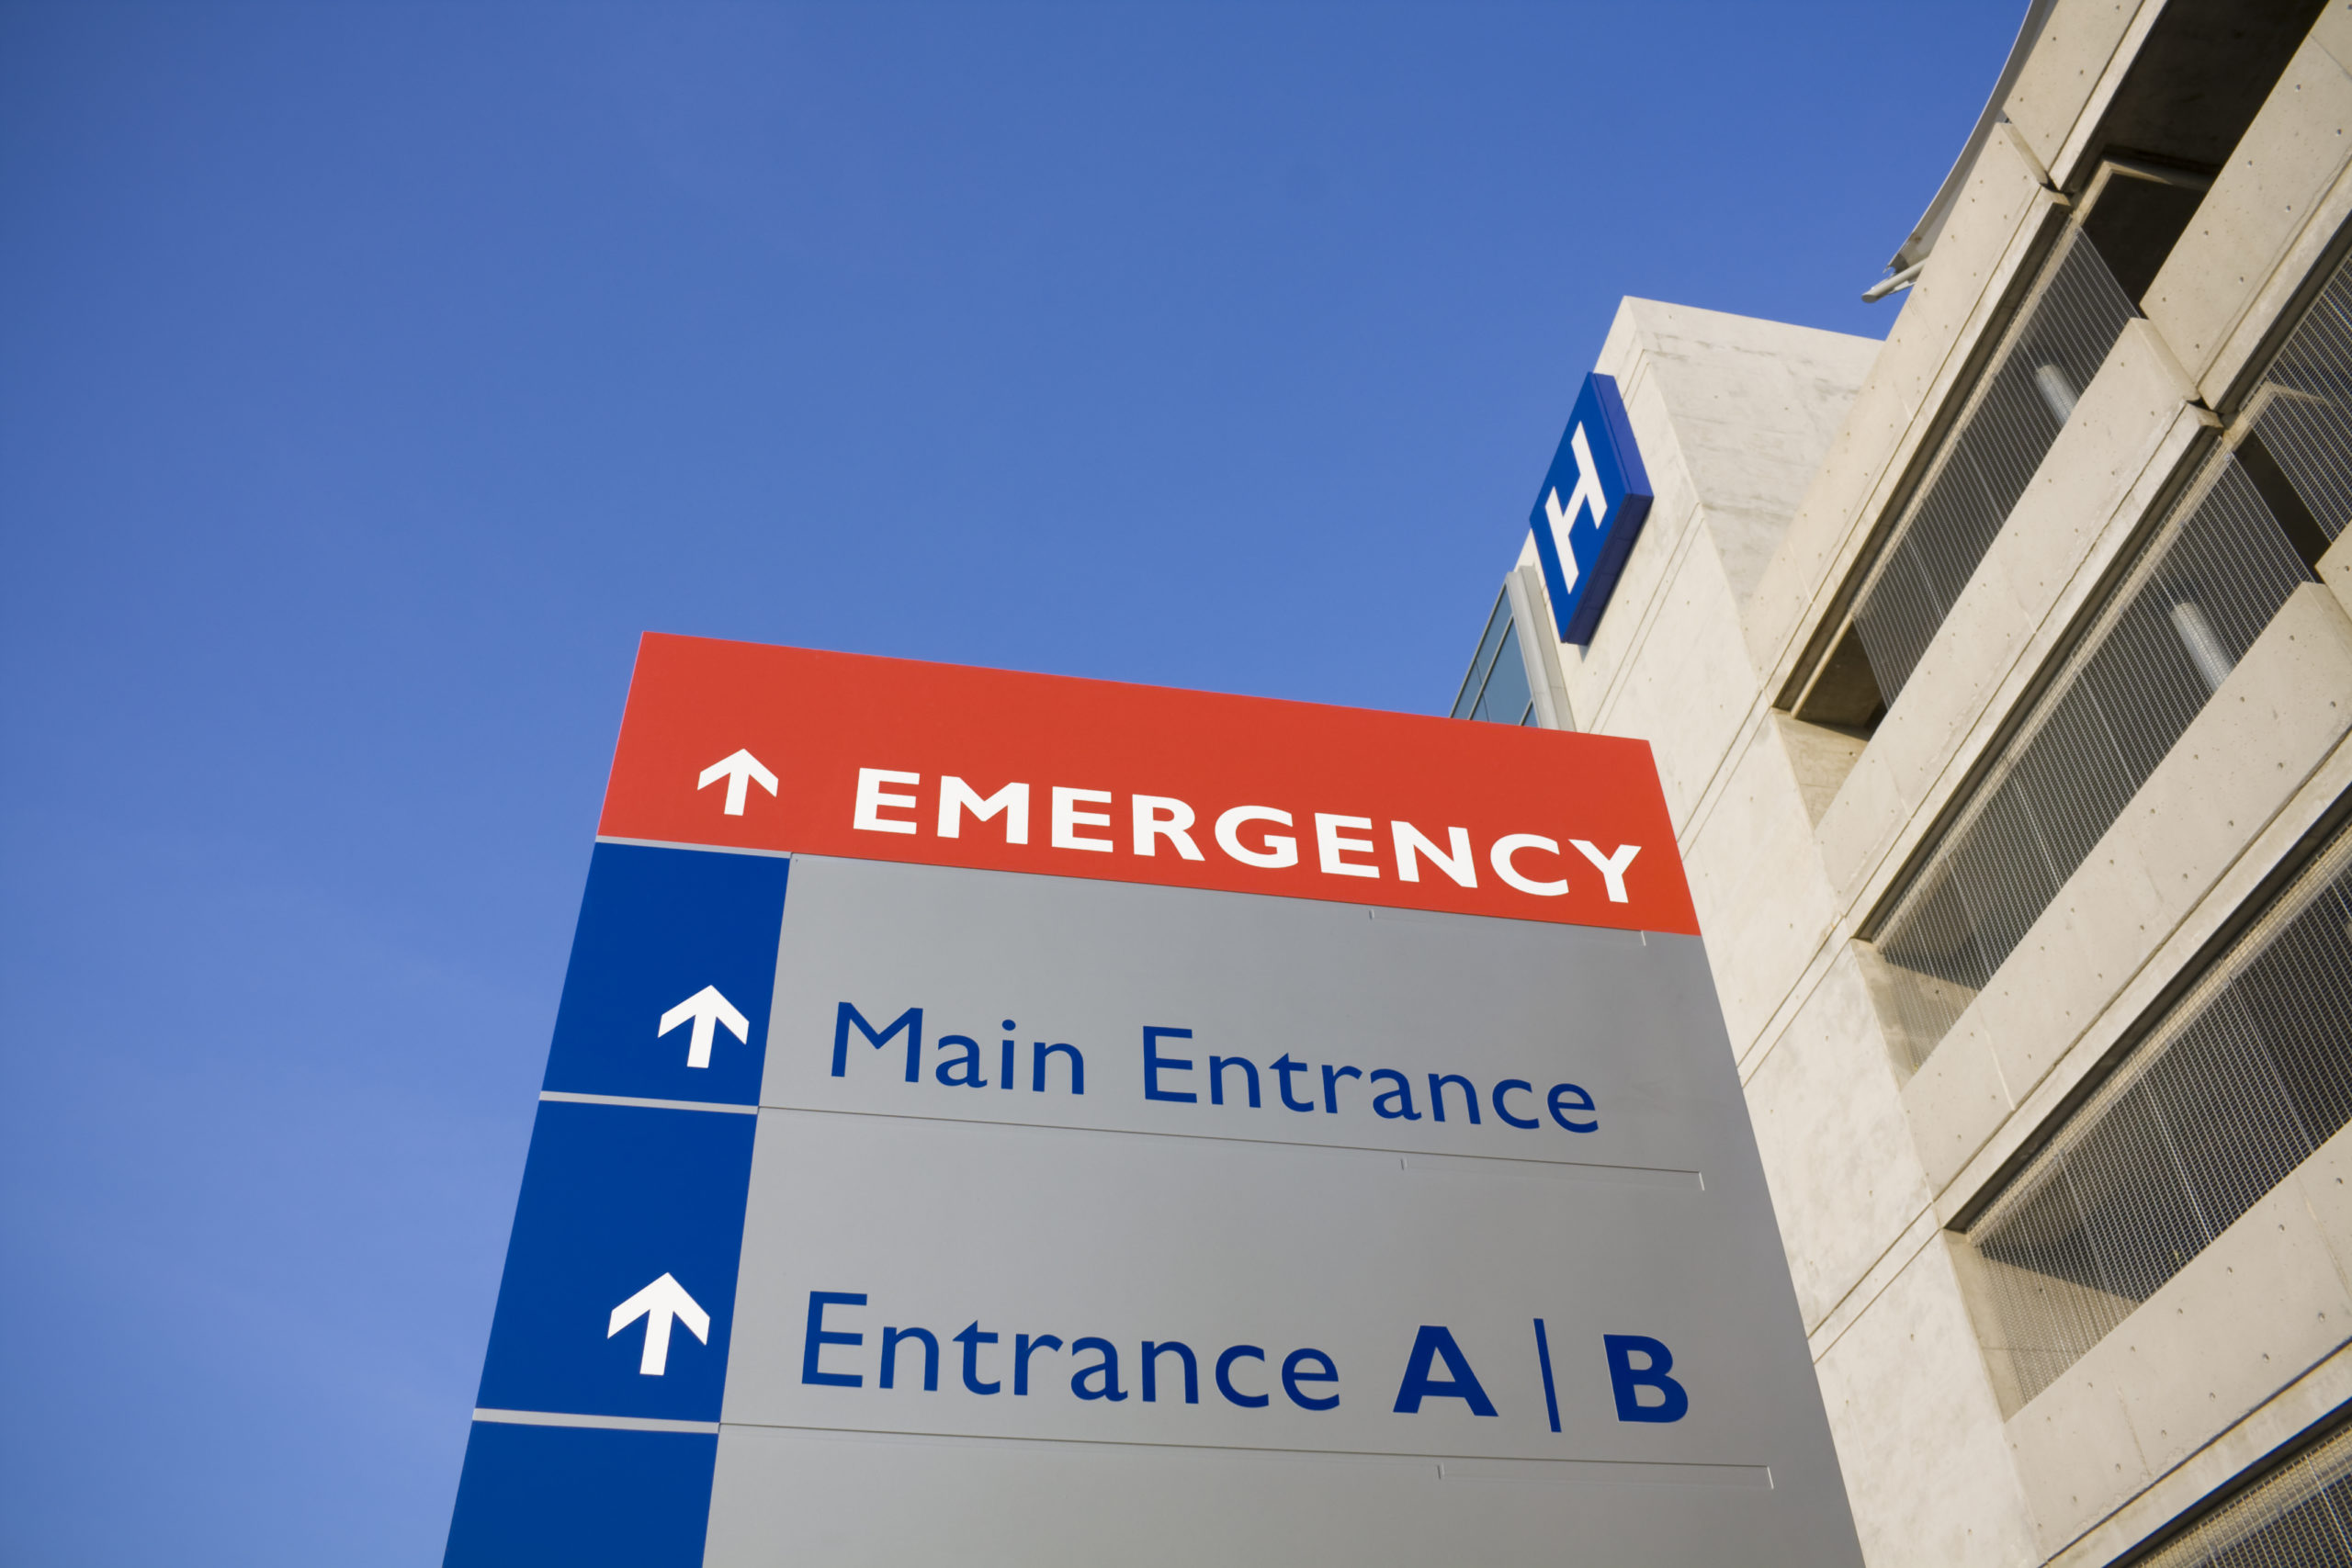 Modern hospital entrance [Steve Design/Shutterstock]